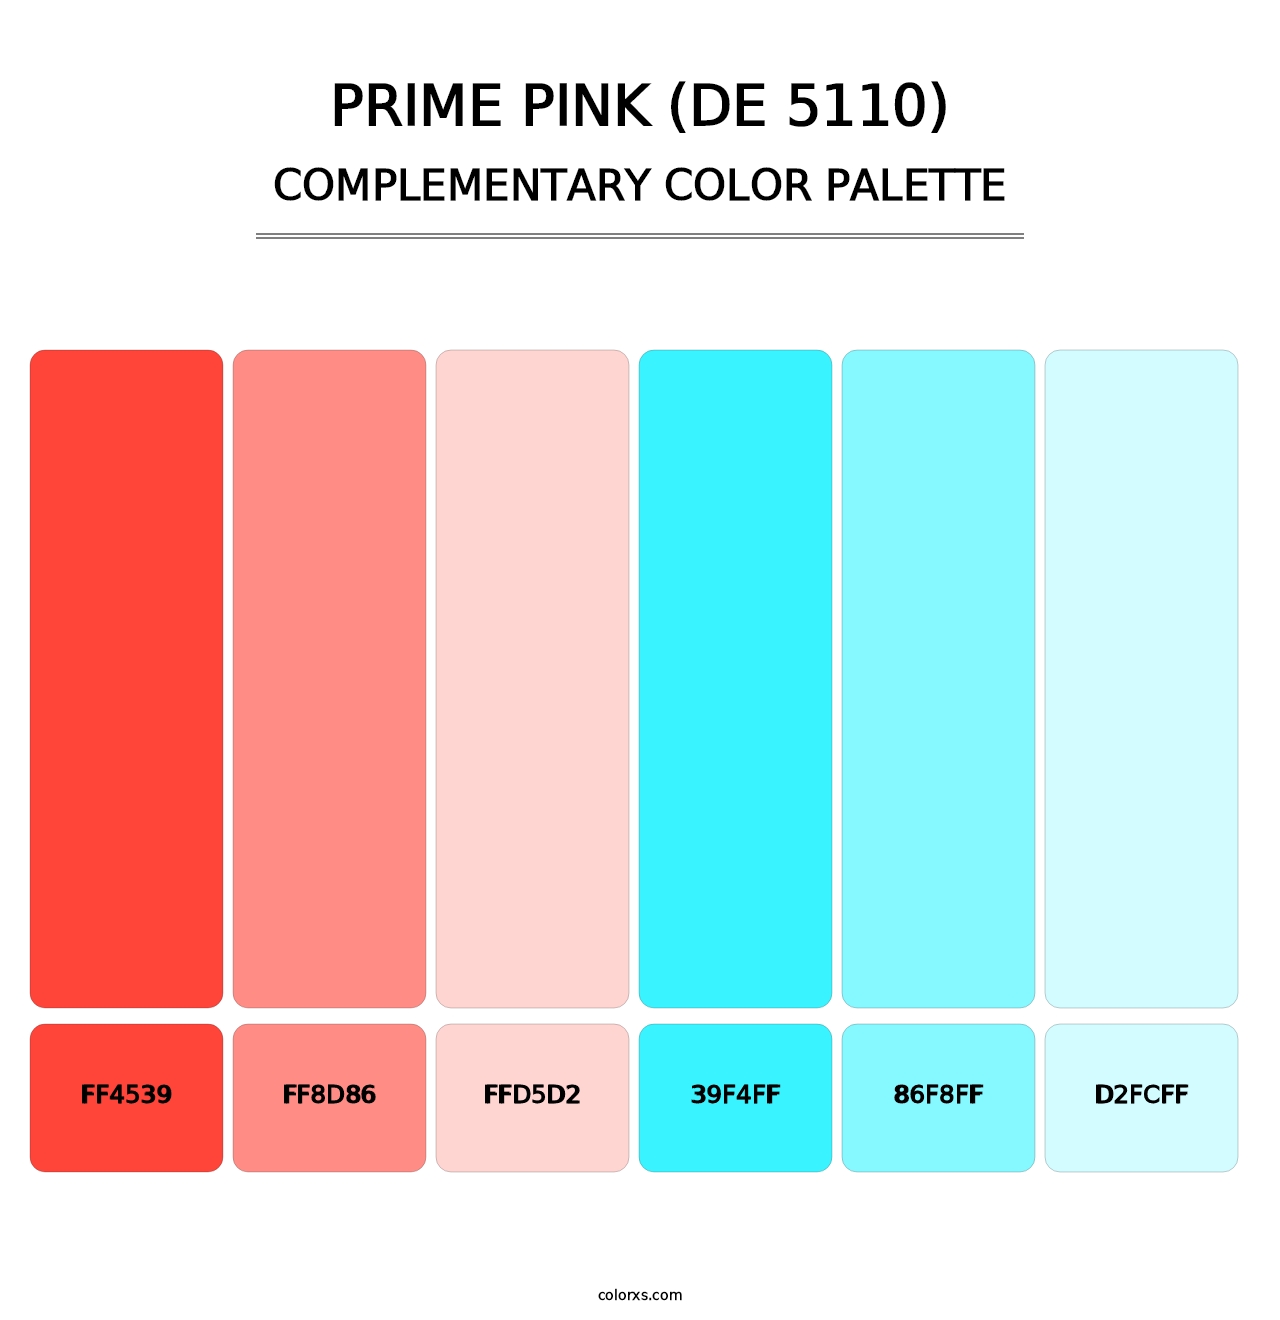 Prime Pink (DE 5110) - Complementary Color Palette